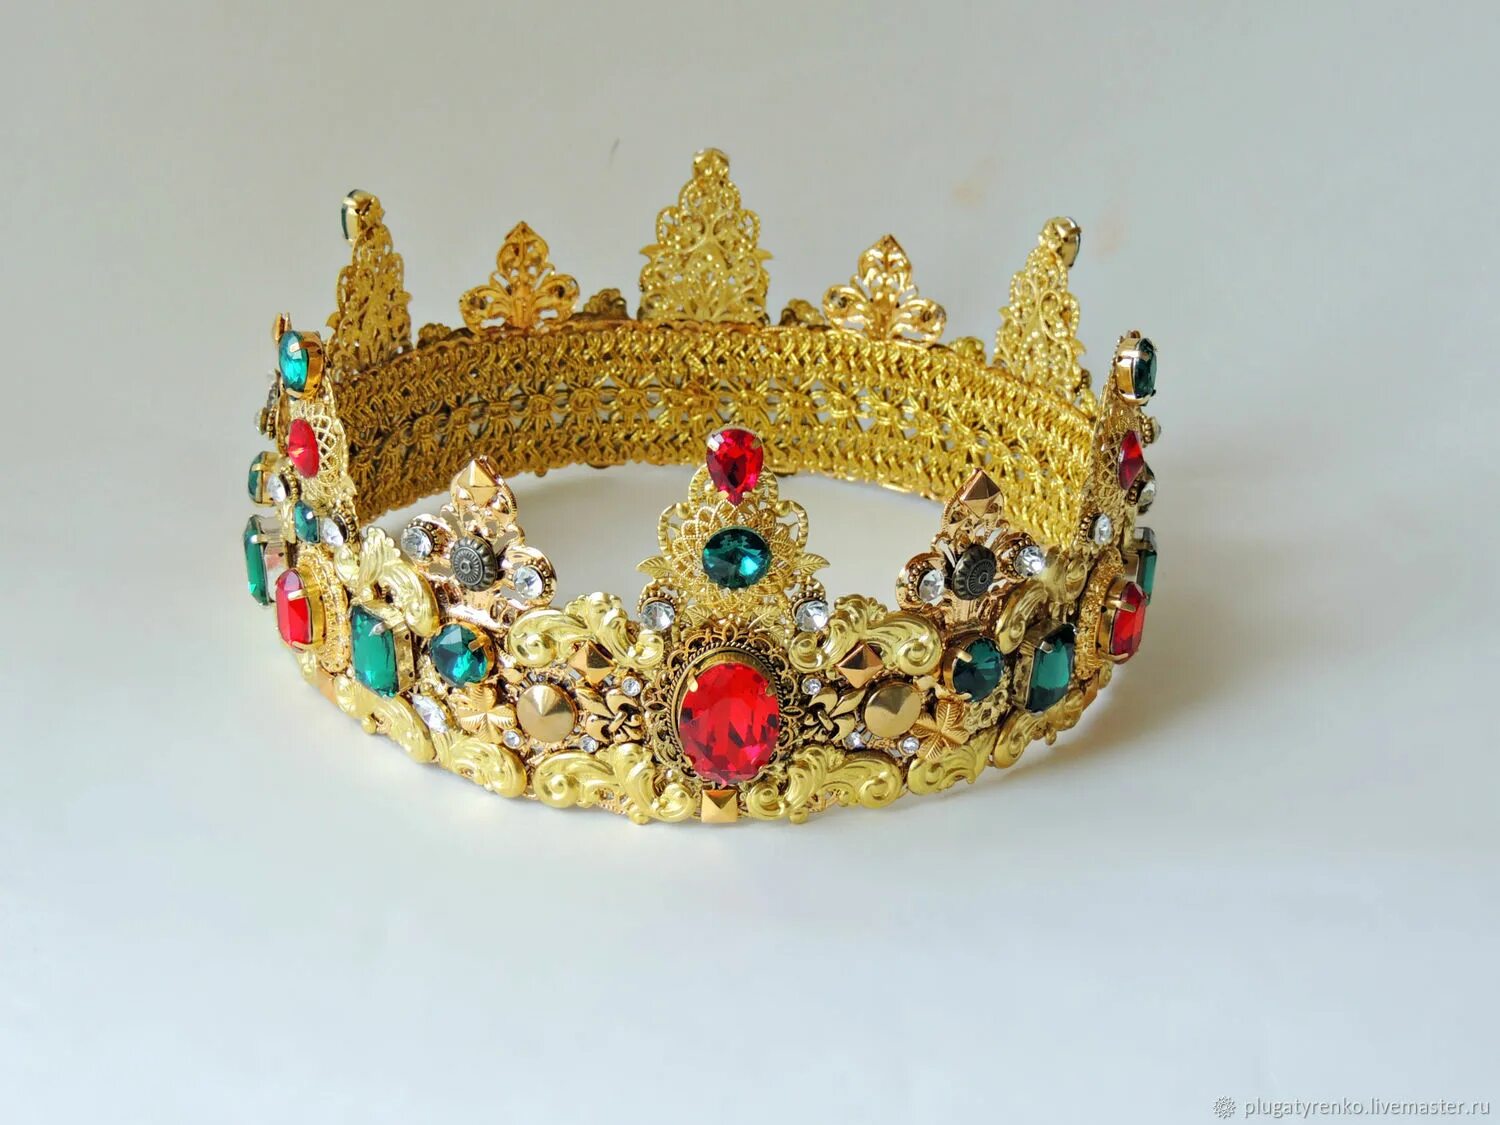 Купить корону хабаровск. Корона мужская. Мужчина в короне. Высокая корона. Мужская корона обруч.